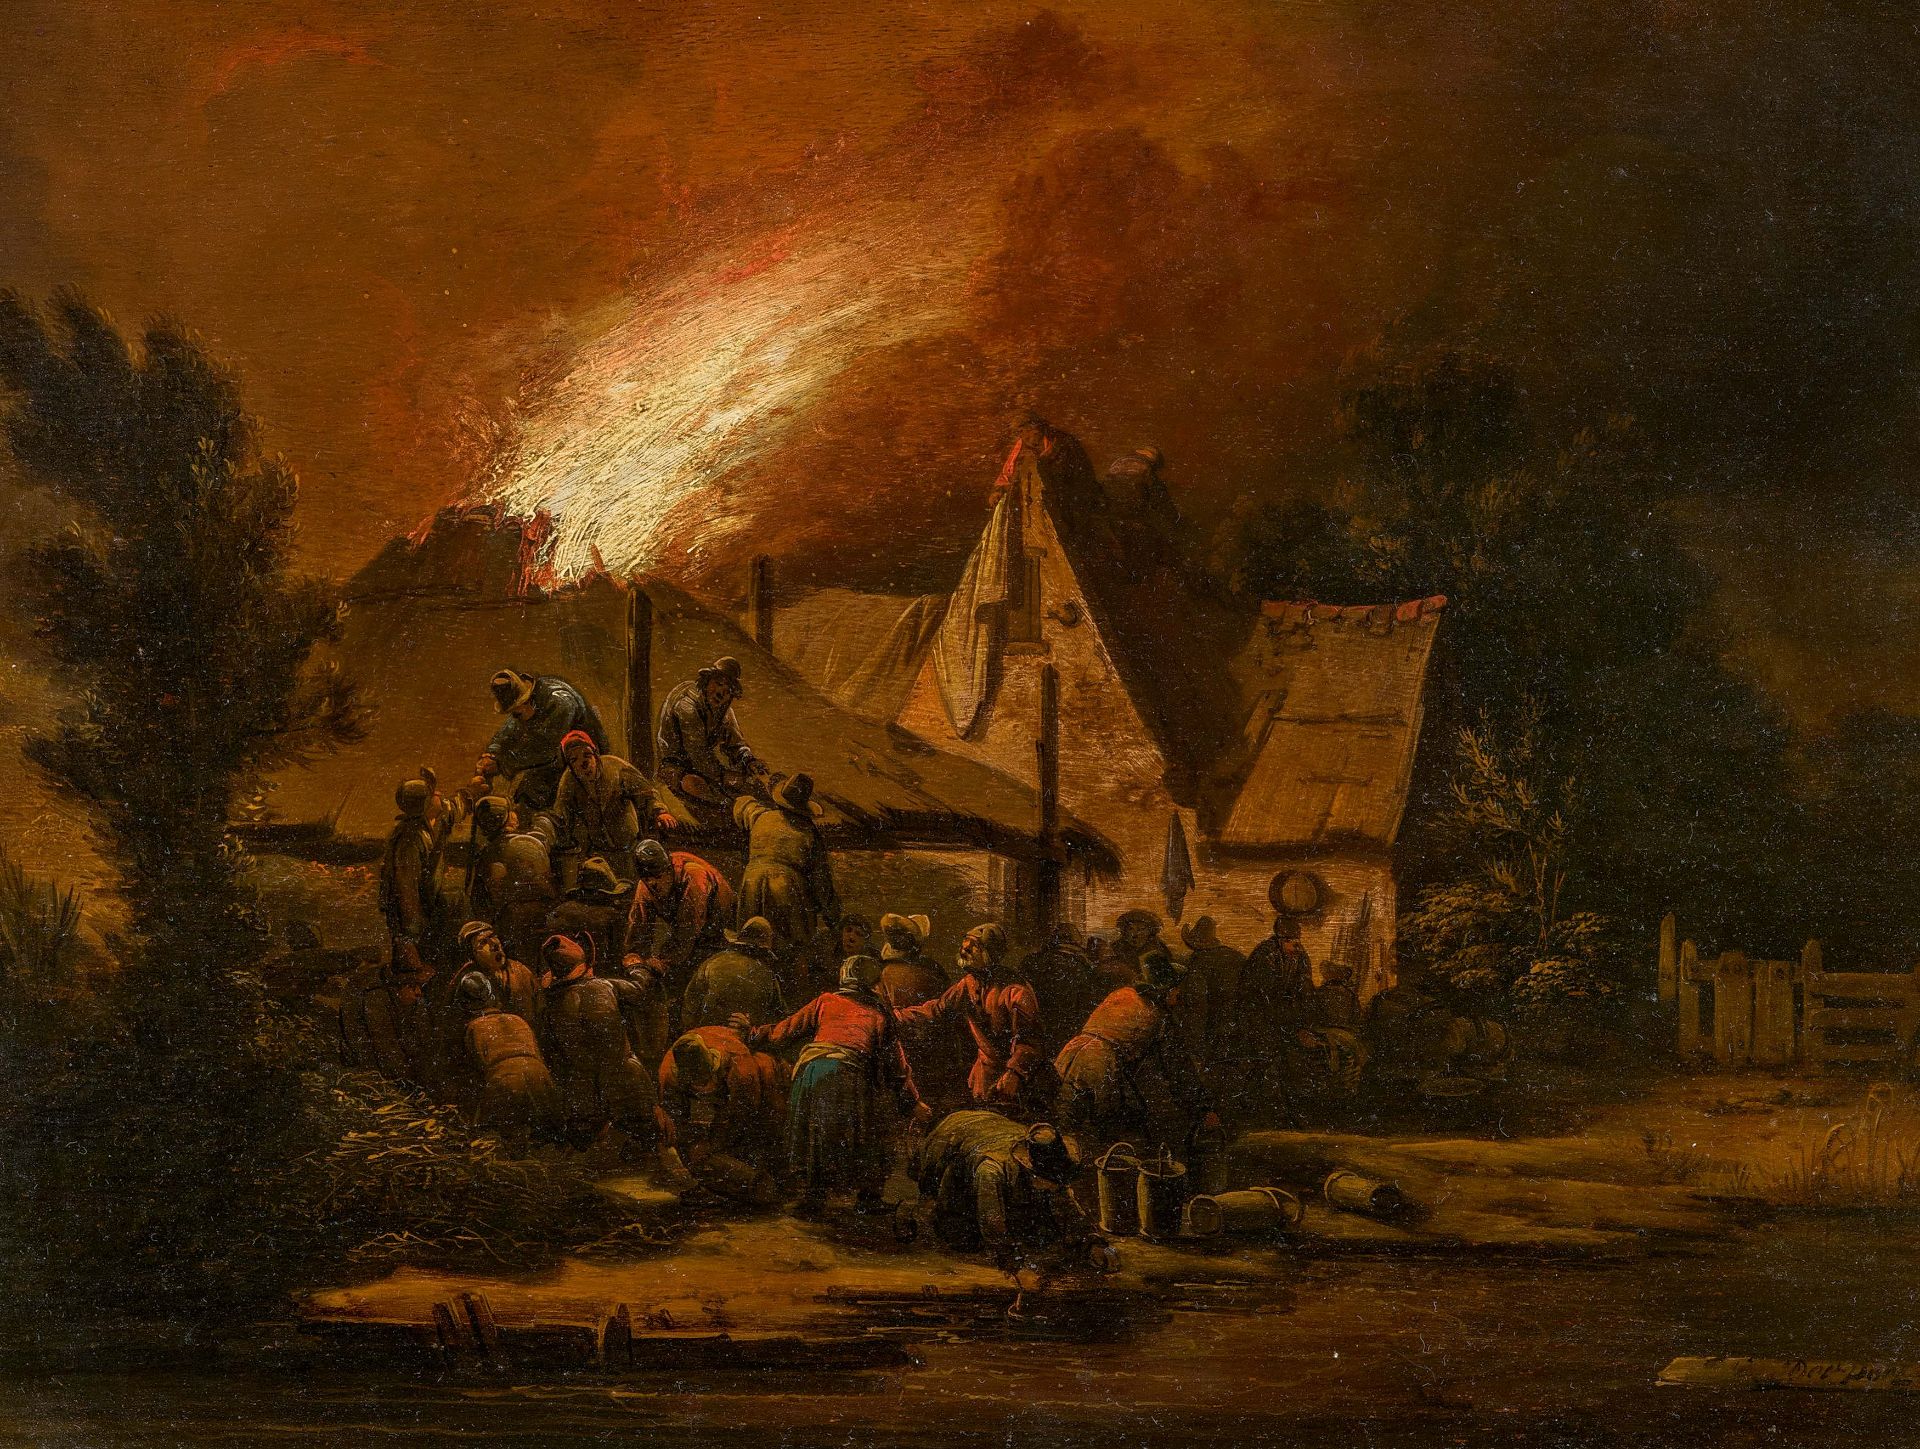 Egbert Lievensz. van der Poel. Farmers Extinguishing a Barn Fire at Night